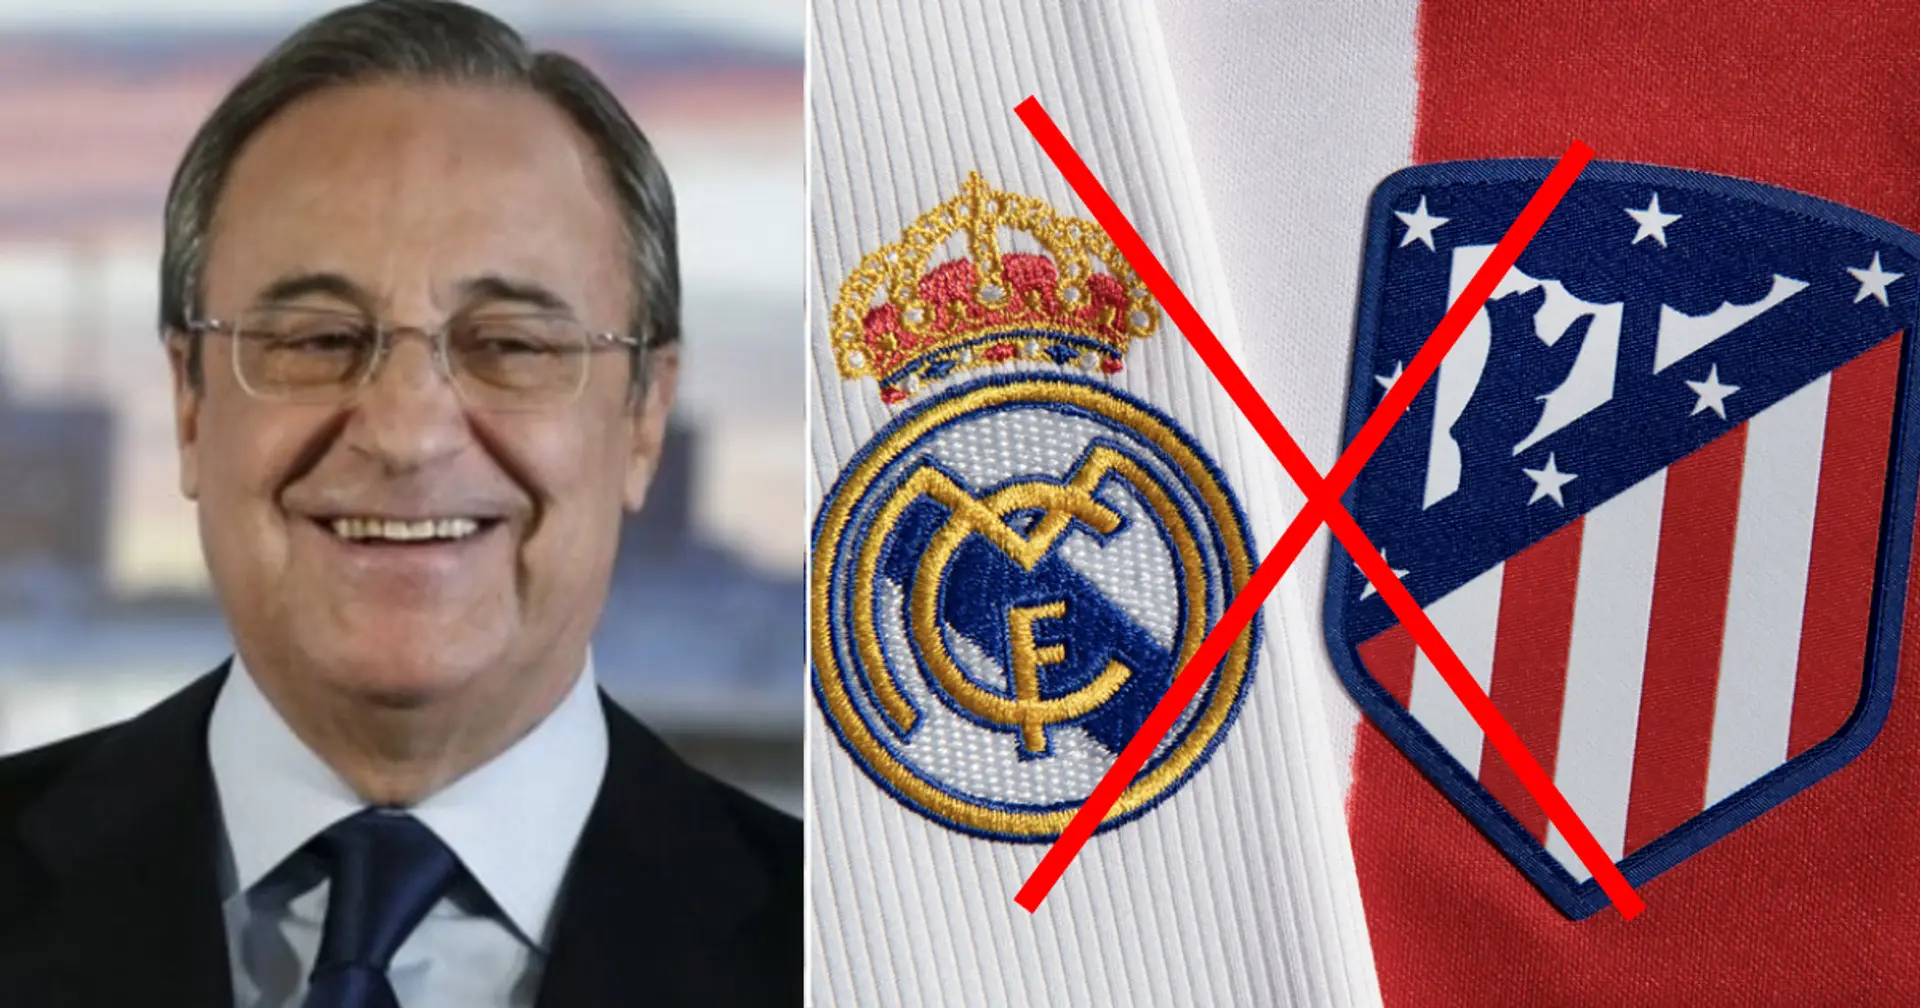 Le Real Madrid engage 6 joueurs locaux de l'Atletico Madrid au milieu de la rupture du "pacte de non-agression"